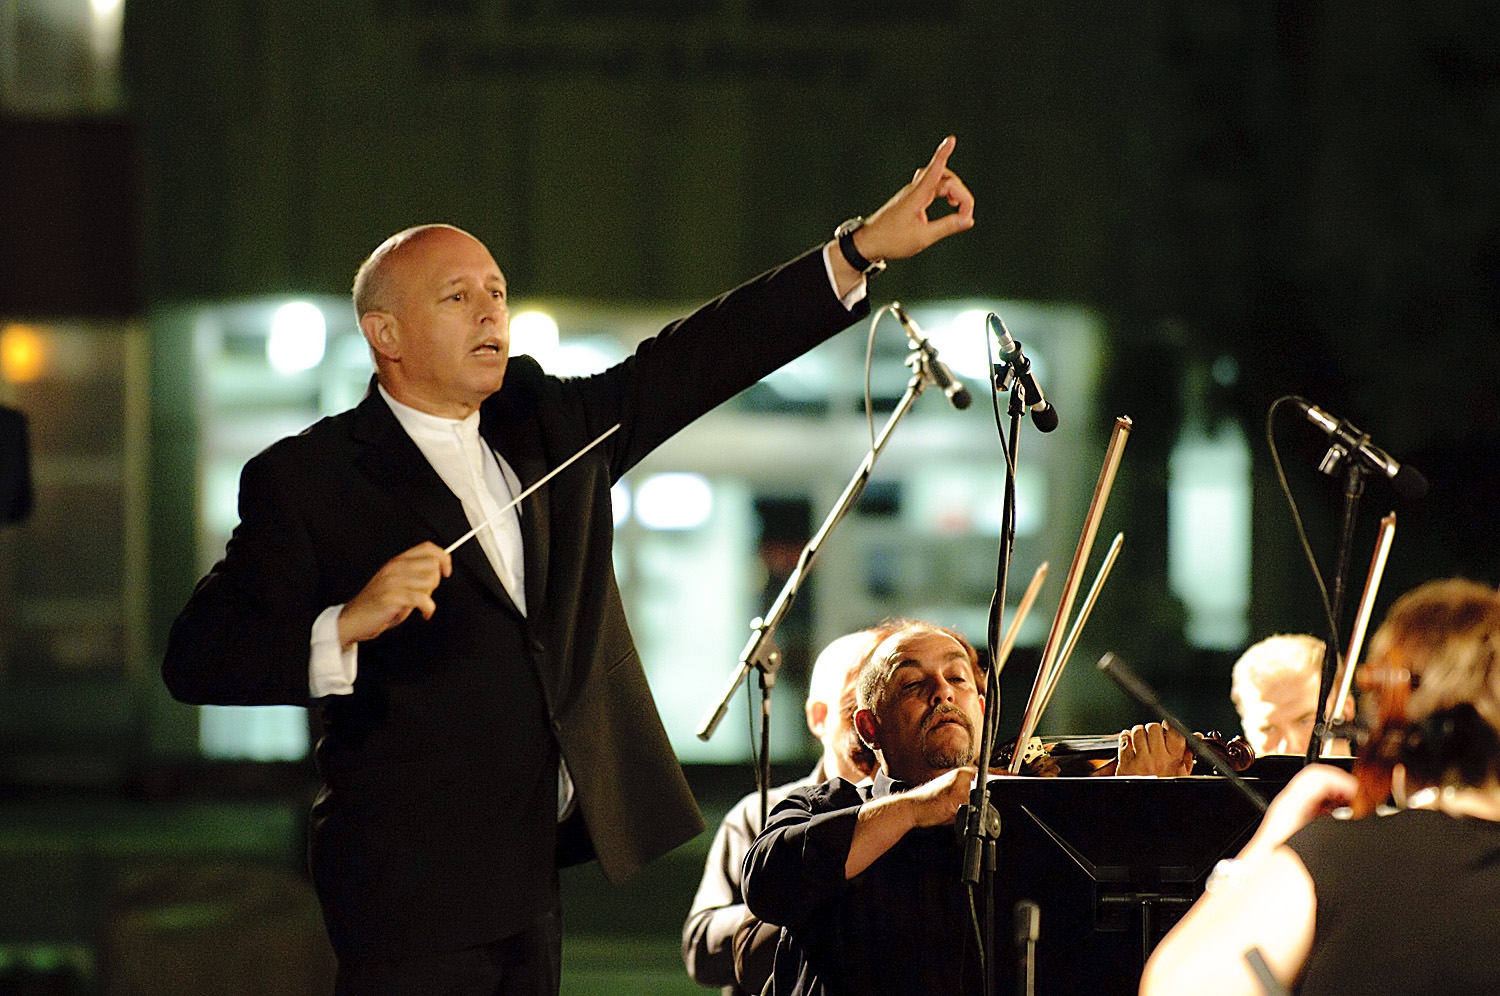 הותר לפרסום: הסינפונייטה הישראלית באר שבע תנגן במופע ה"פסקול של המדינה"